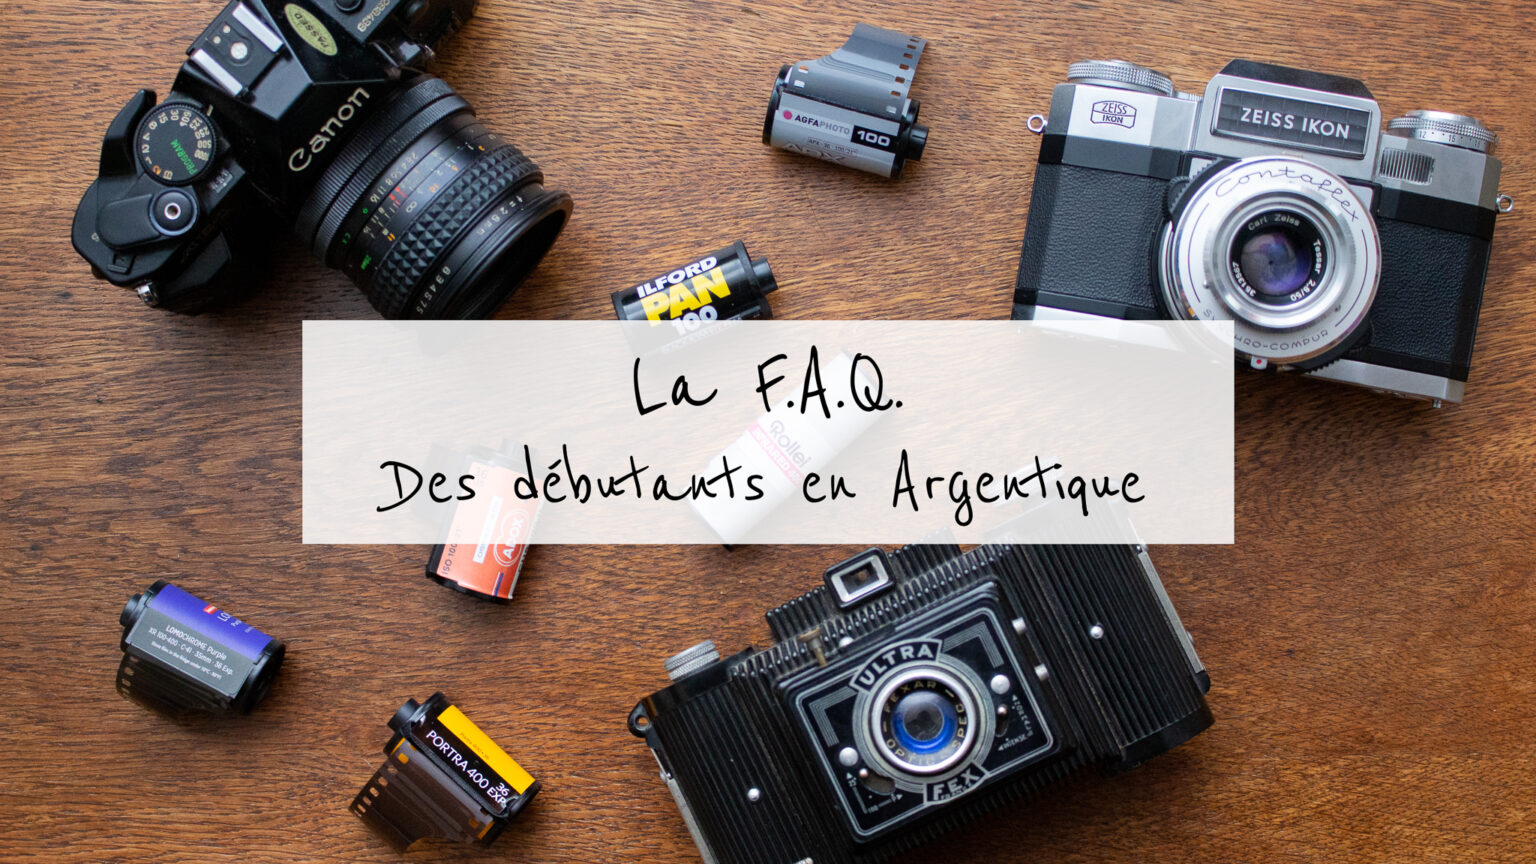 Pellicule argentique périmée : comment la photographier ?